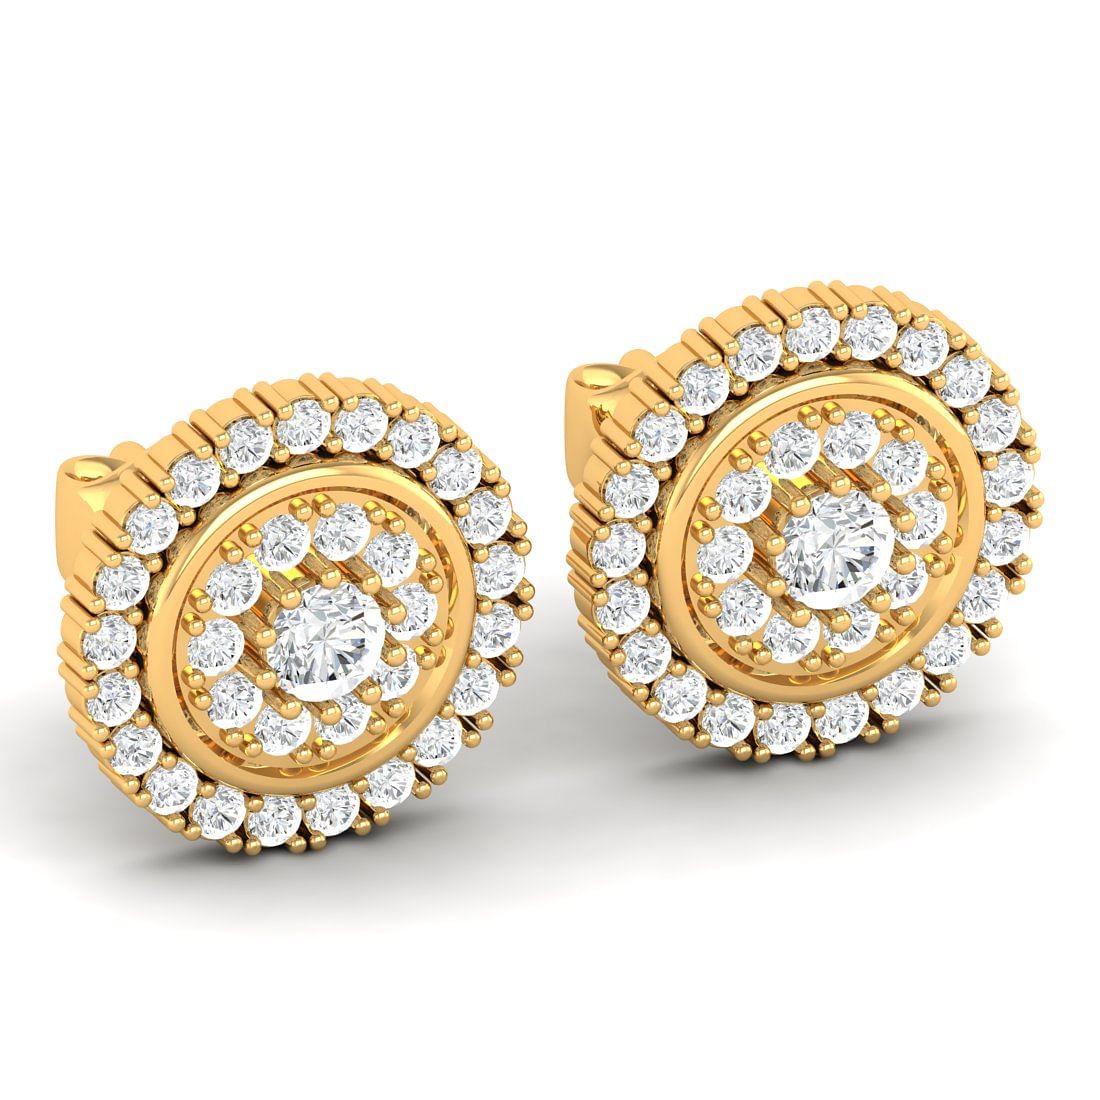 14k Yellow Gold Adele Diamond Stud Earrings For Office Wear